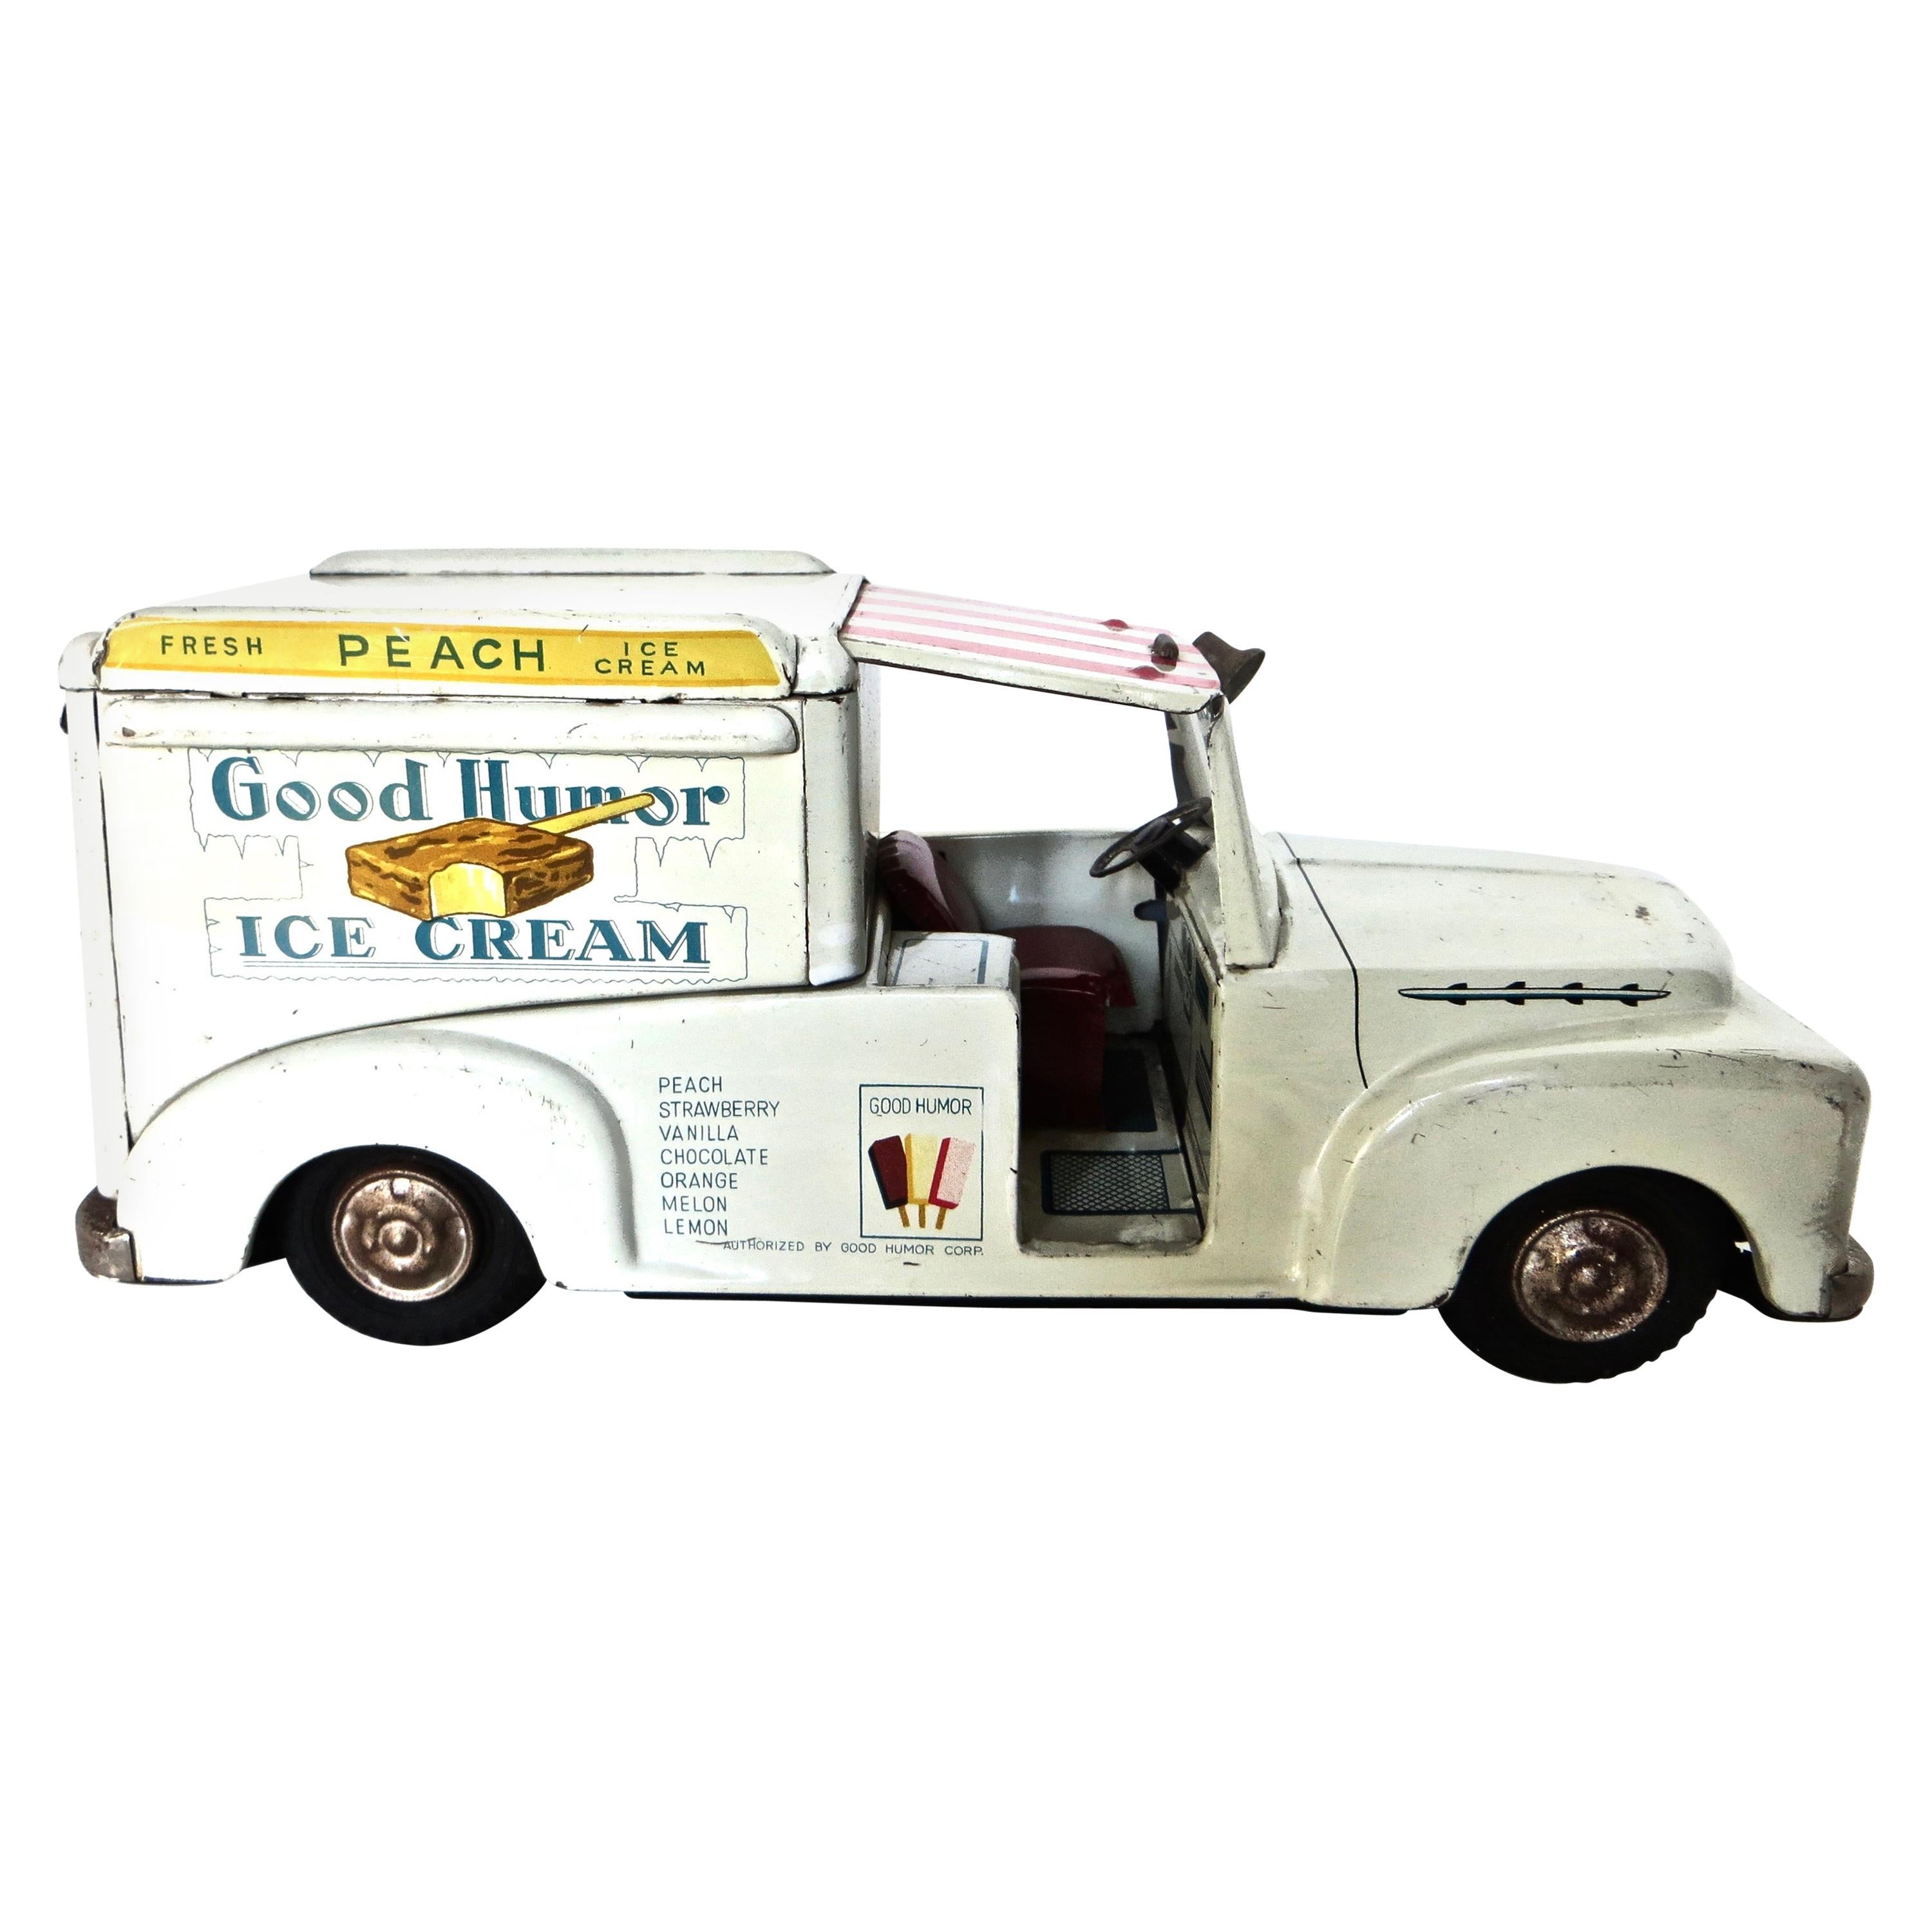 Toy "Good Humor" Ice Cream Truck, circa 1952